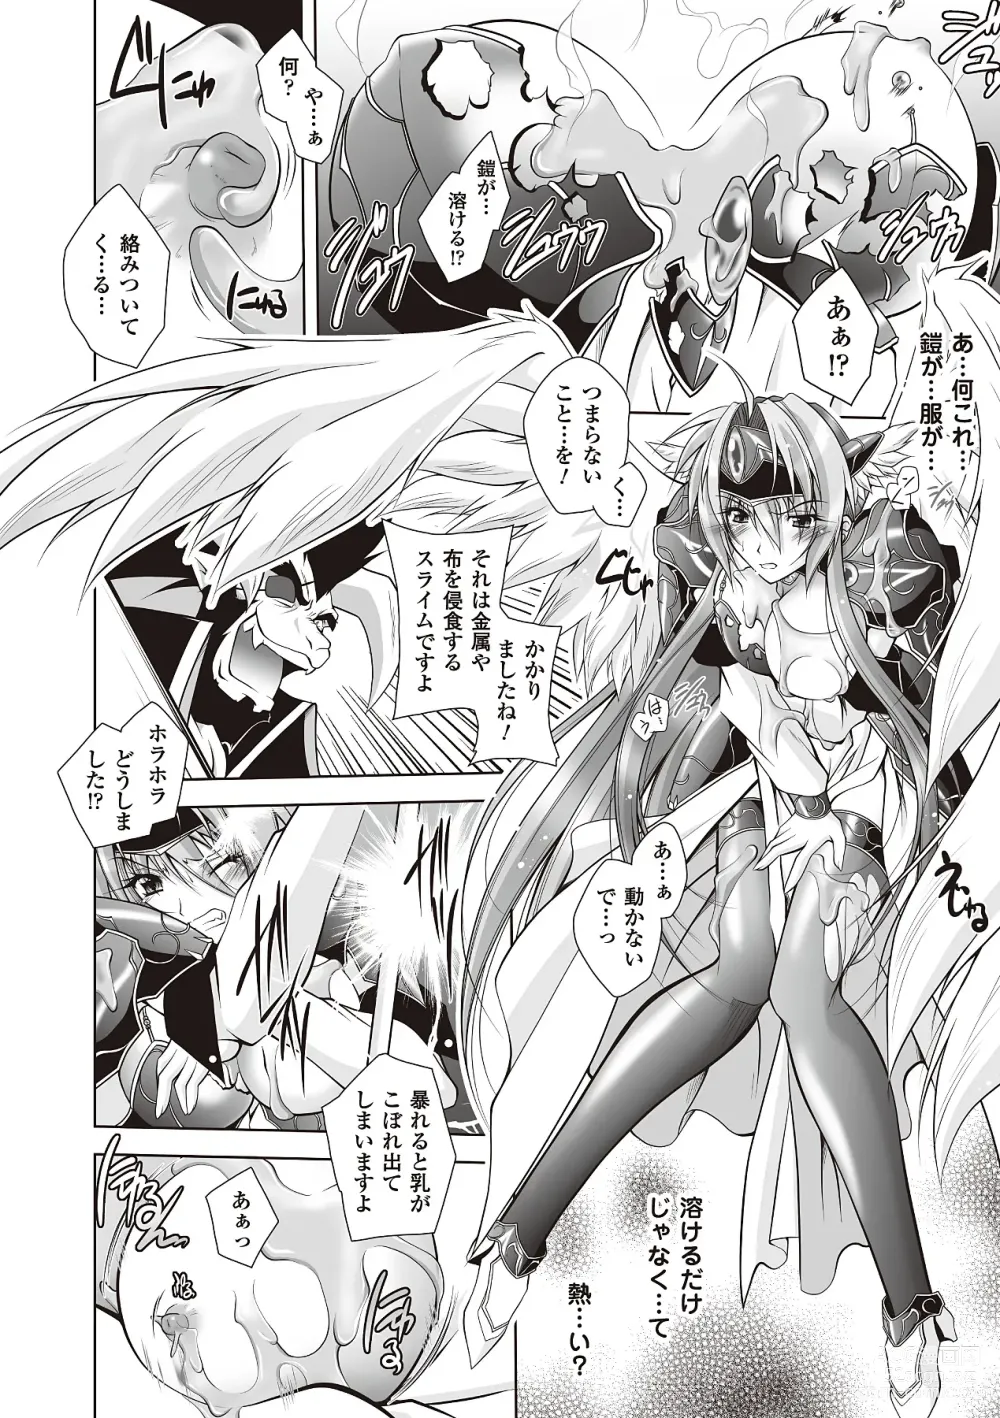 Page 8 of manga Datenshi-tachi no Rhapsody - Fallen Angels Rhapsody